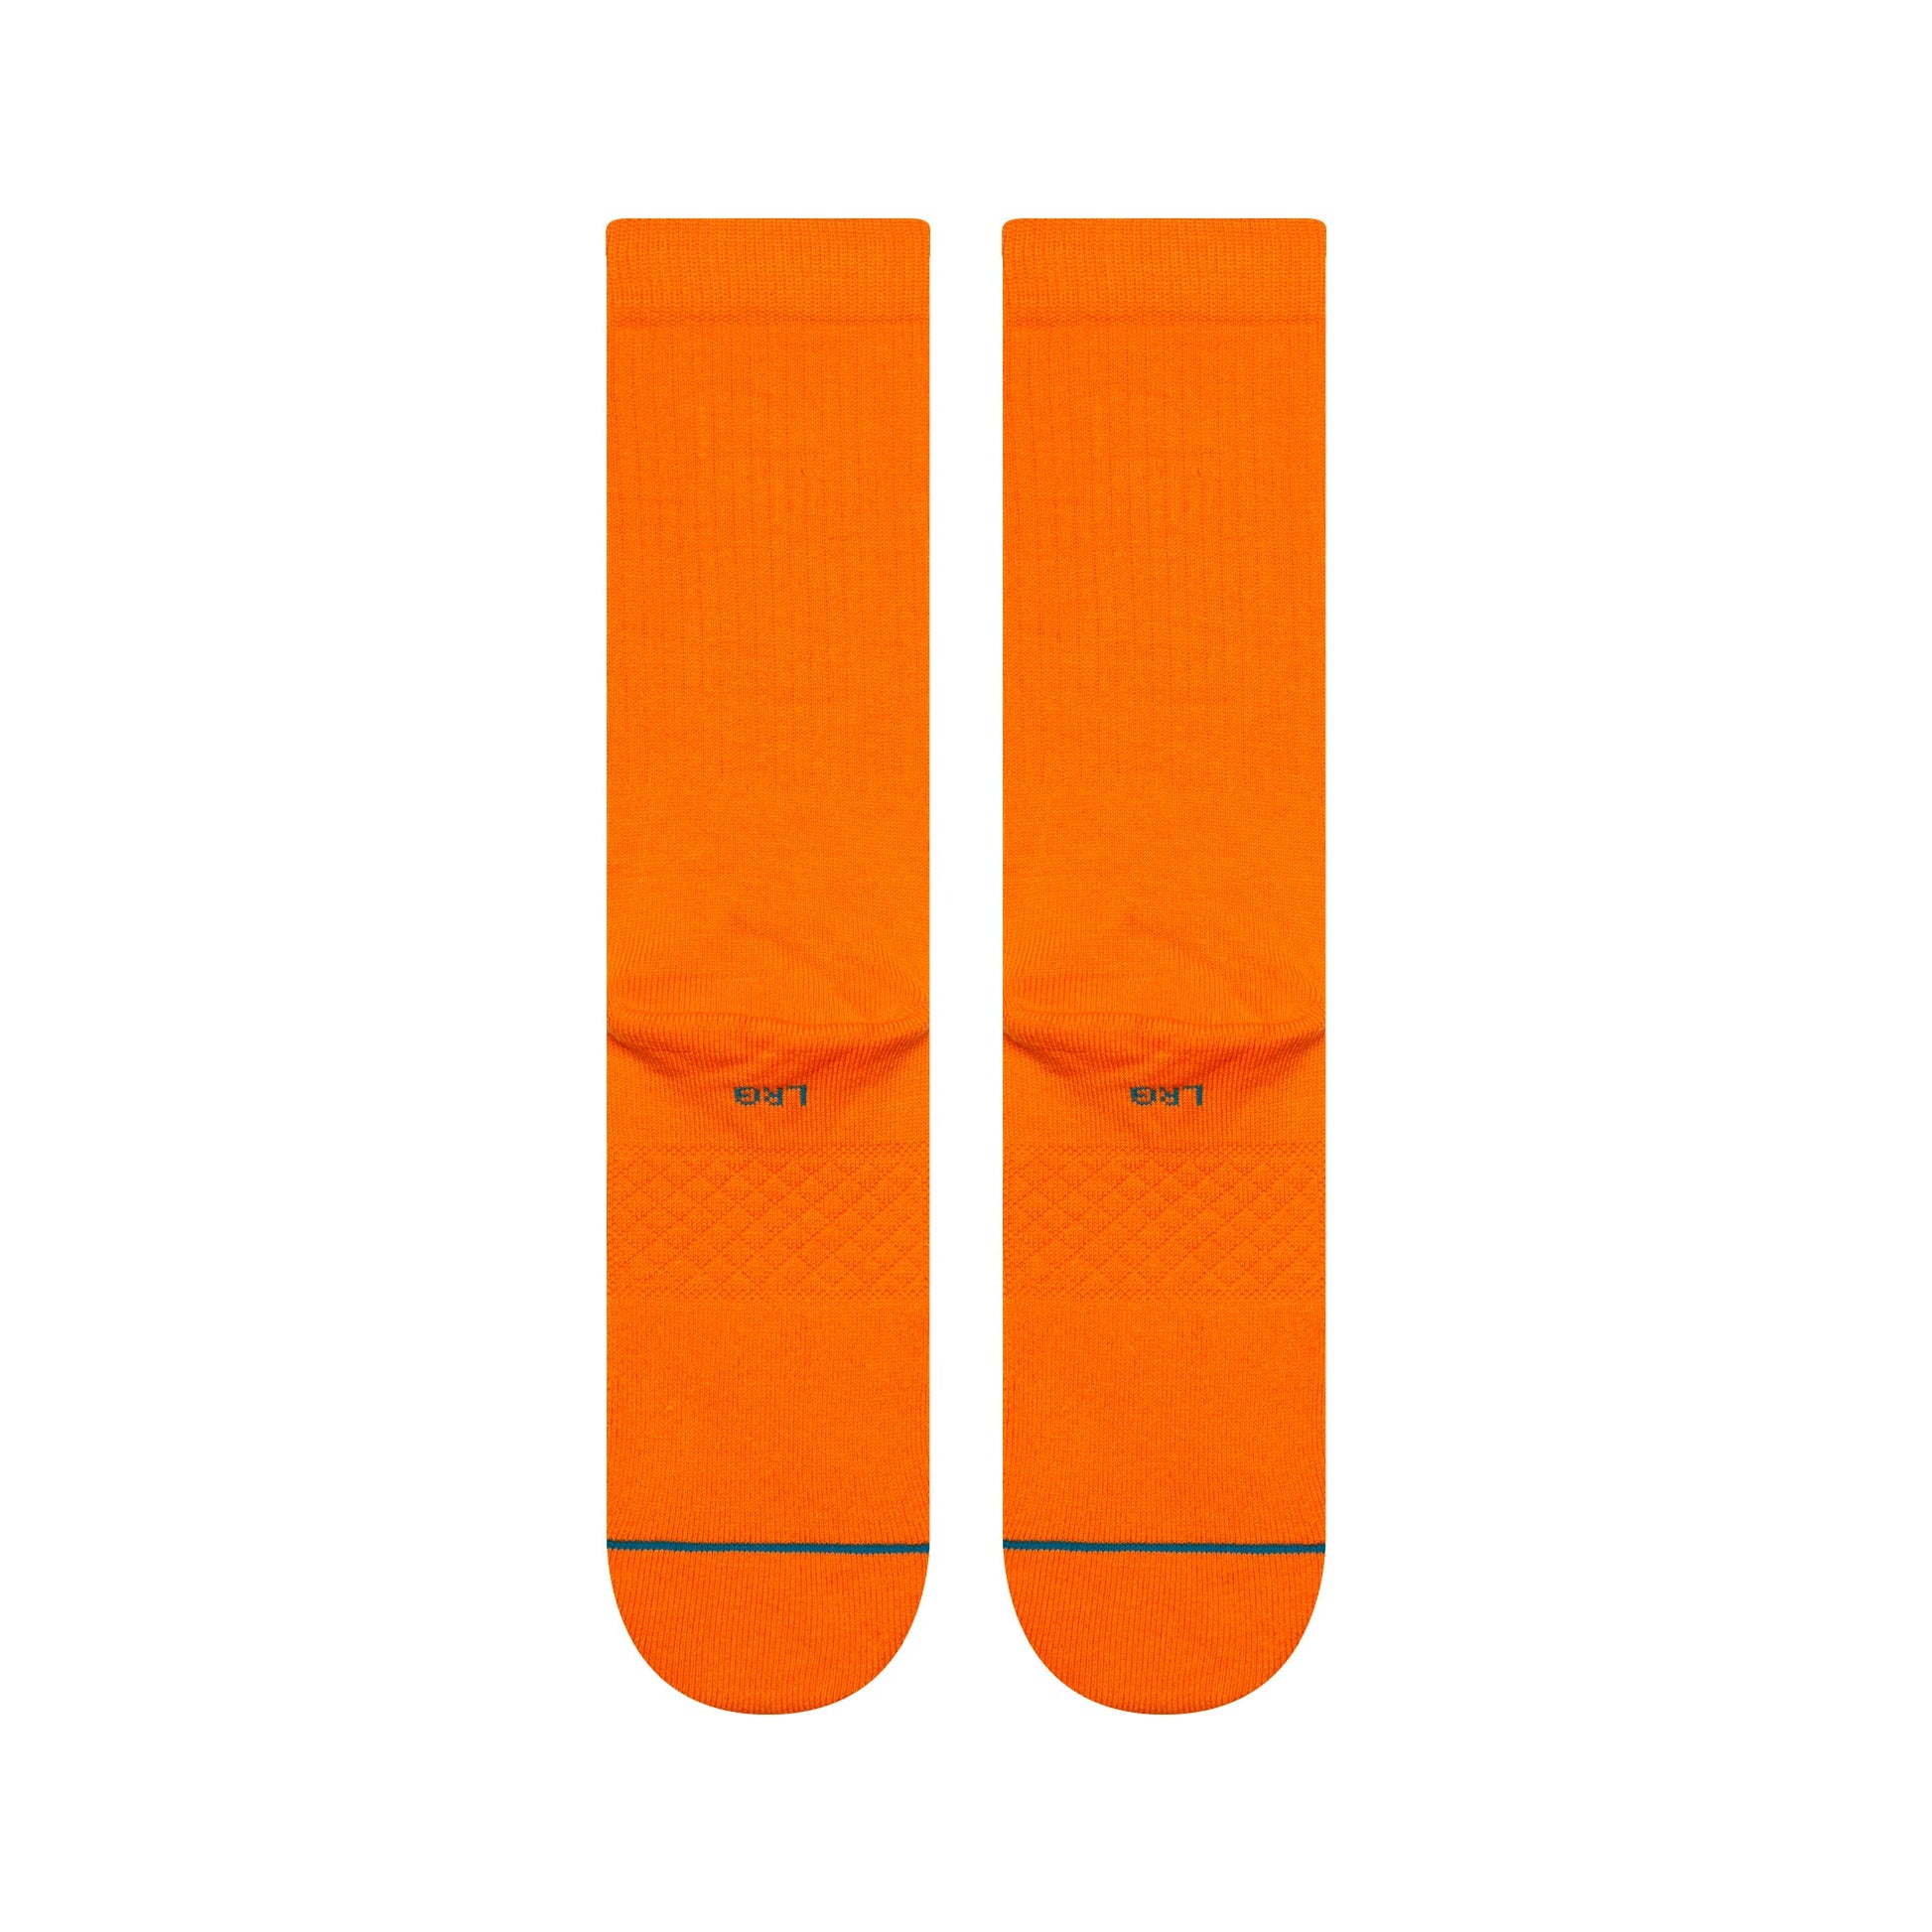 Chaussettes mi-mollet orange Icon de Stance